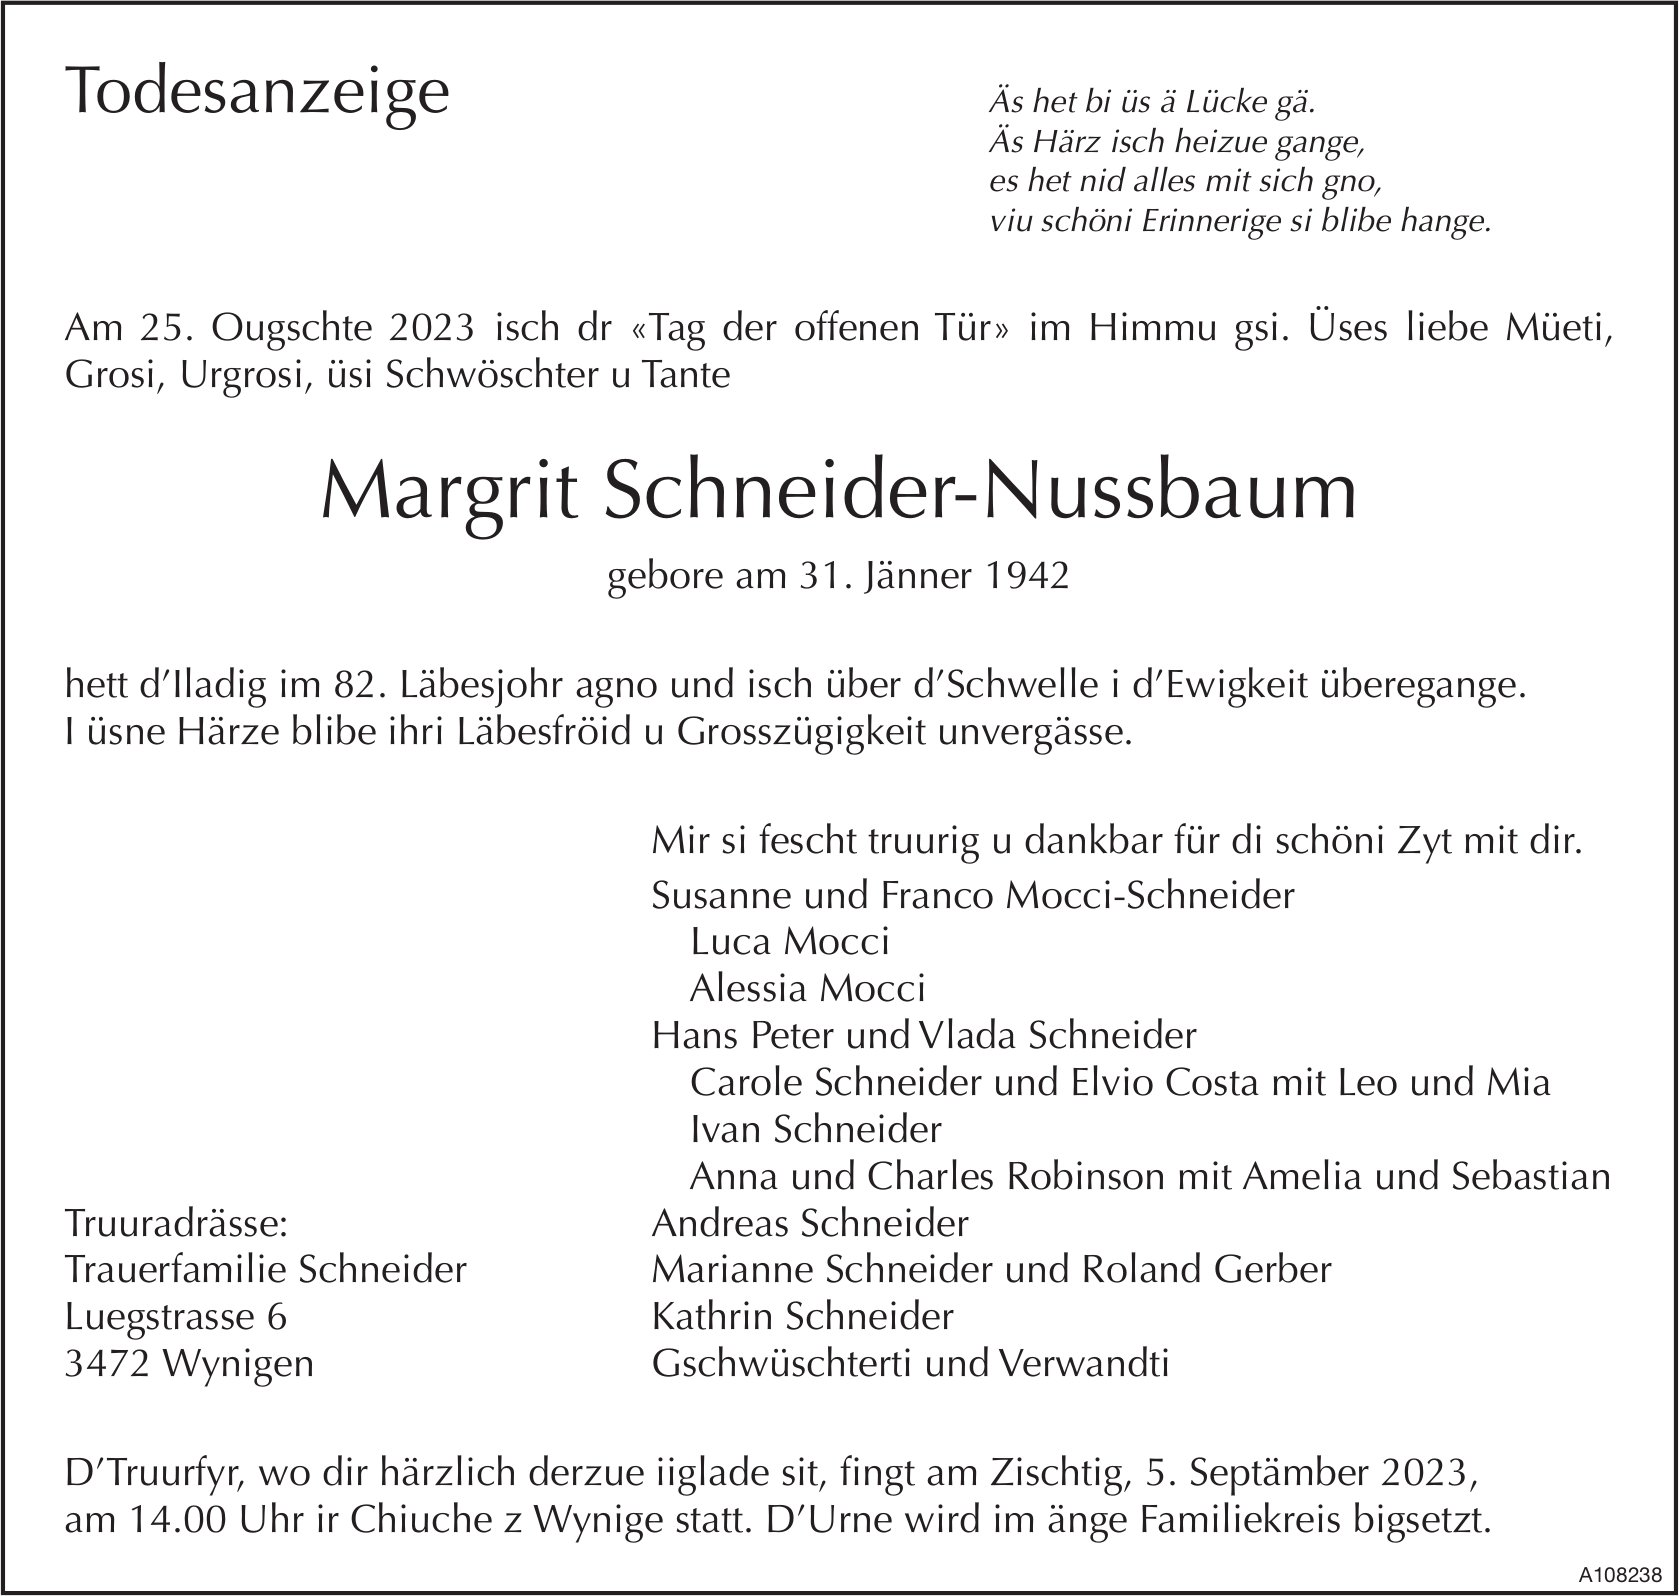 Margrit Schneider-Nussbaum, August 2023 / TA